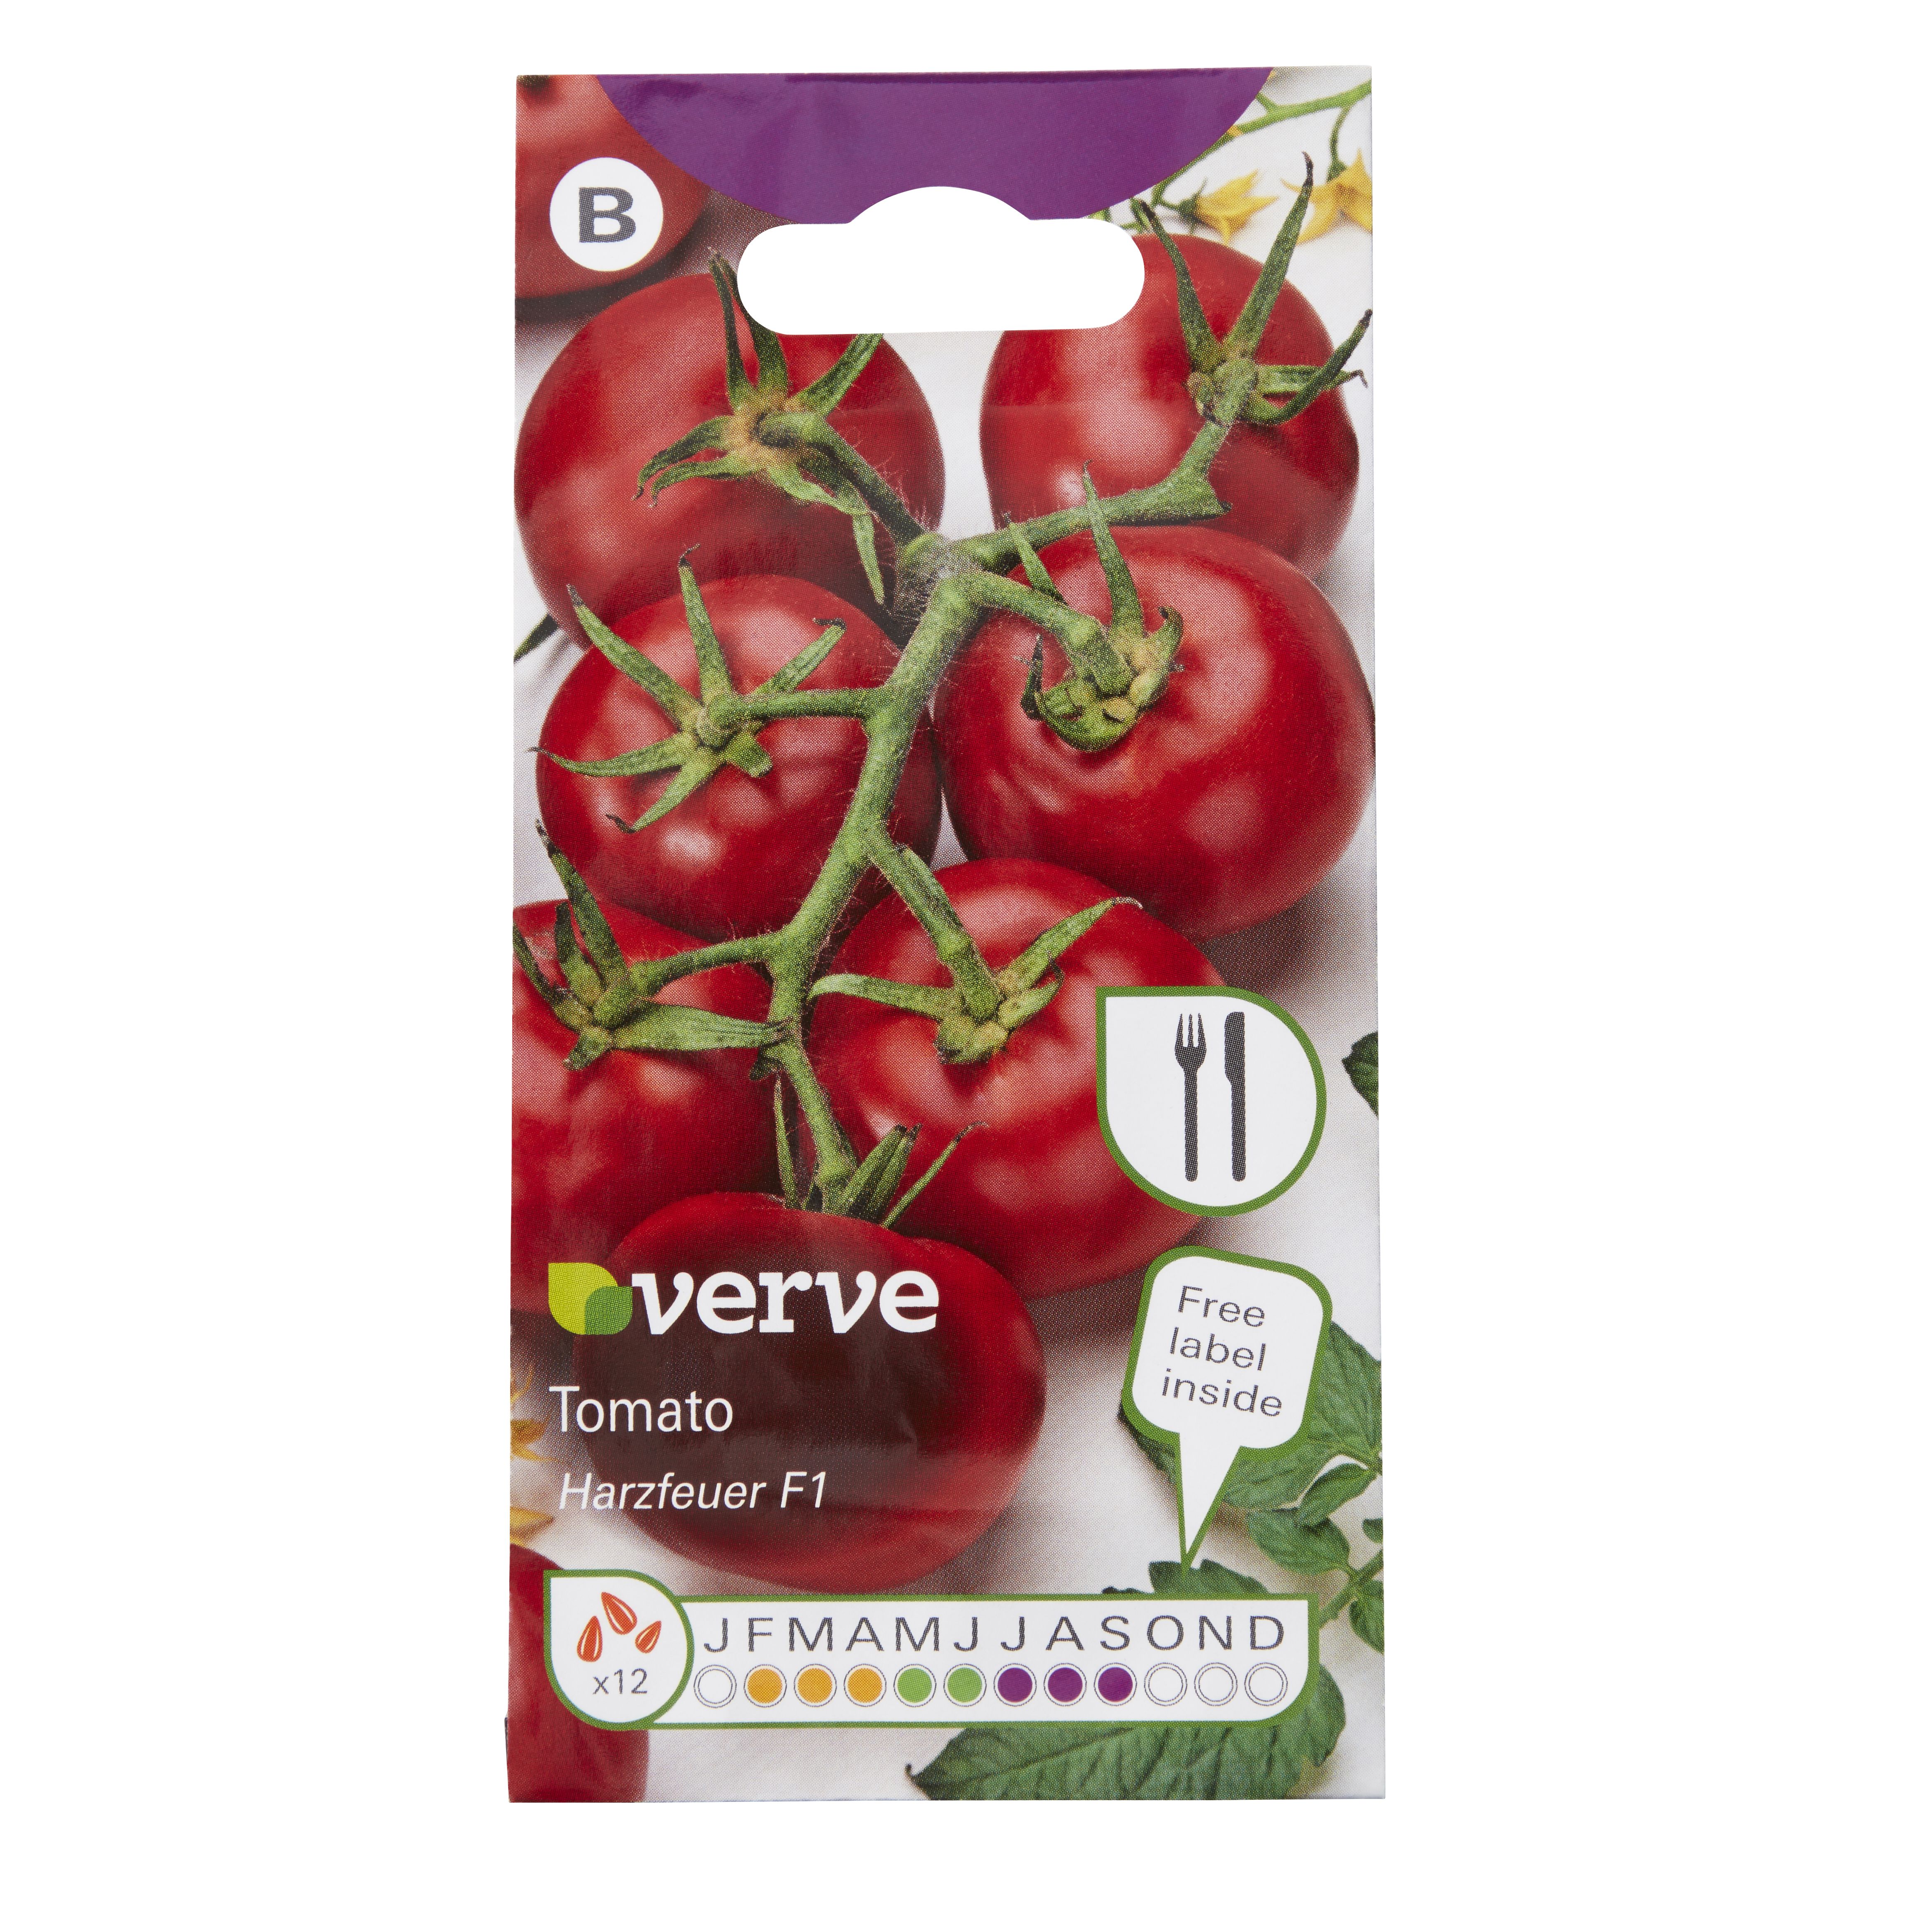 Herzfeuer F1 tomato Seed